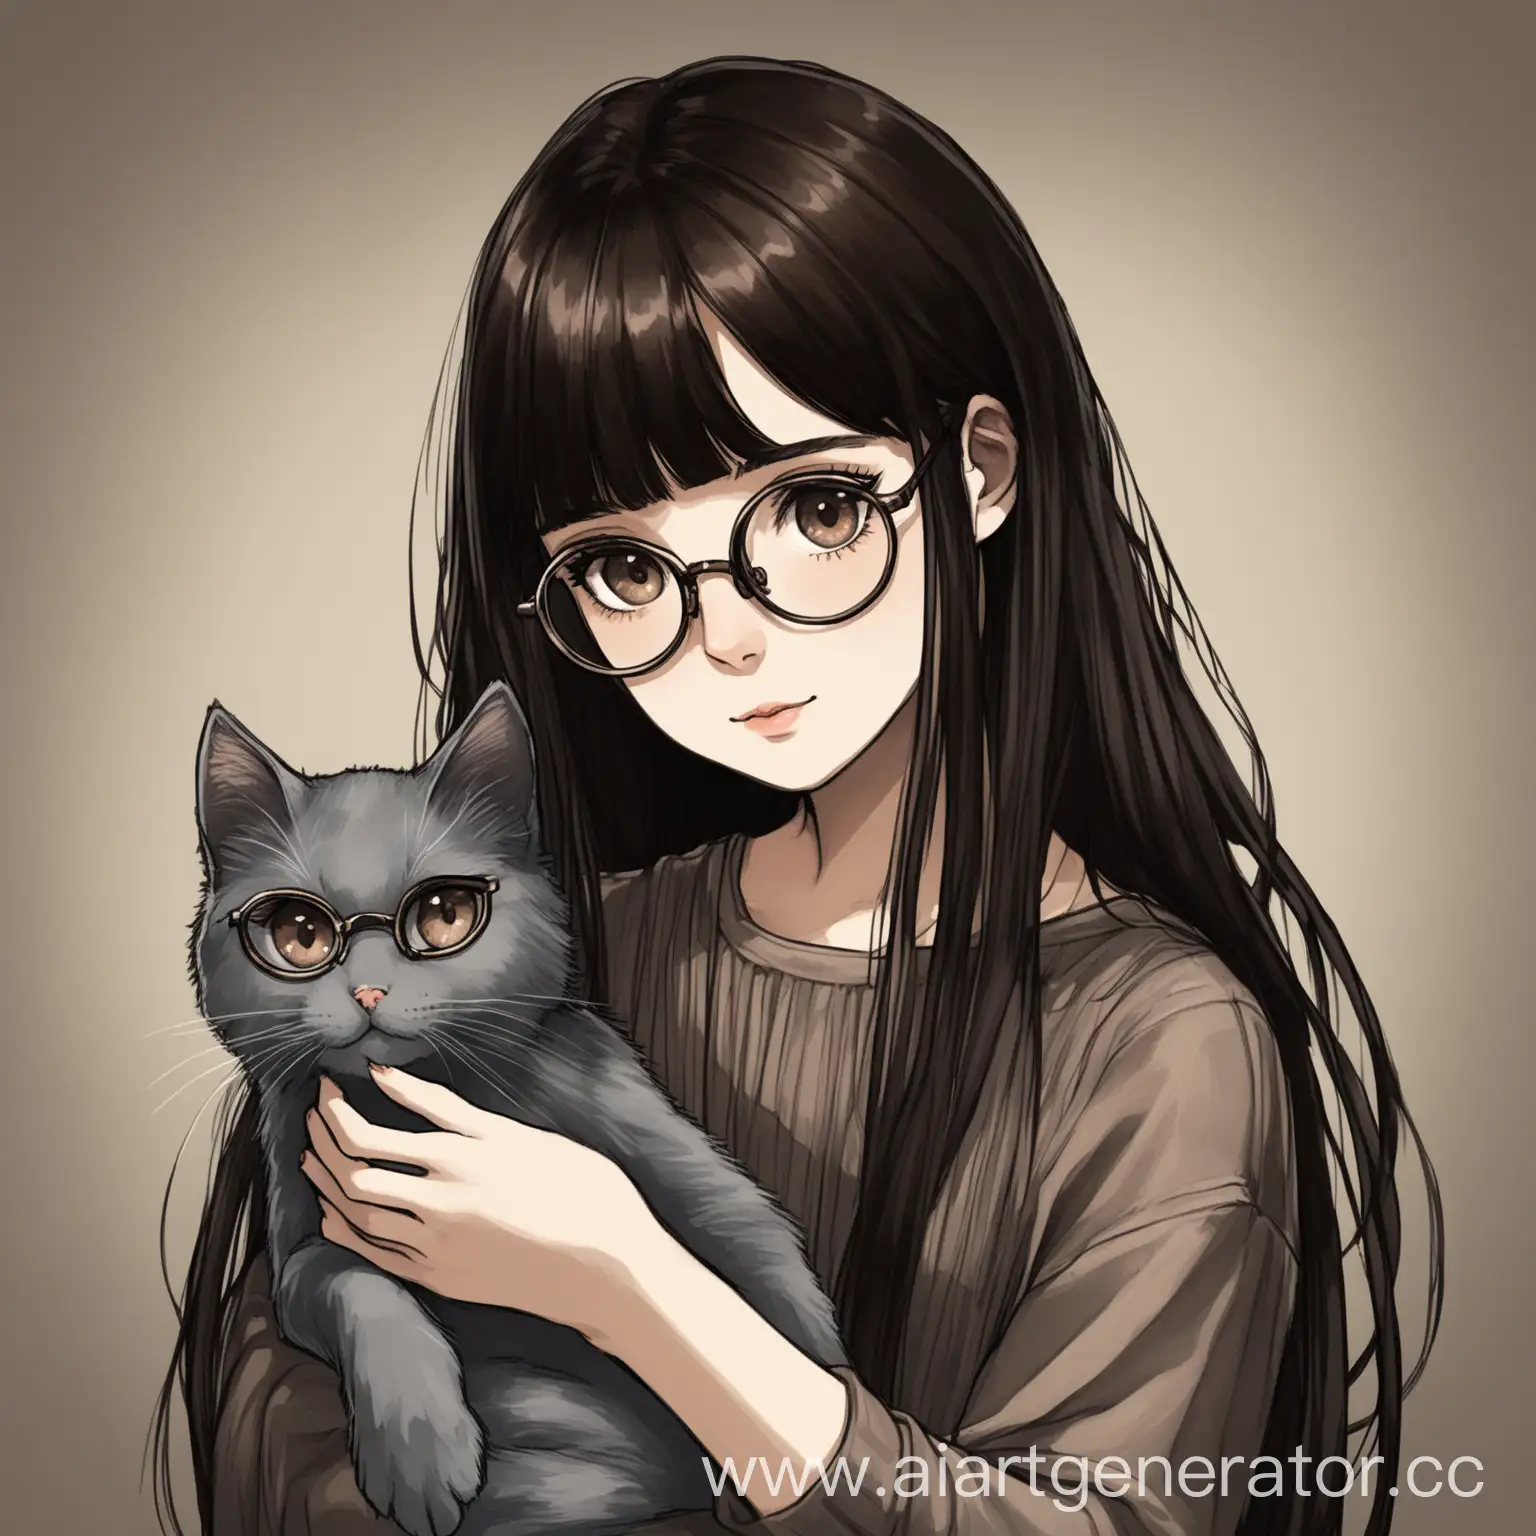 нарисуй девушку с длинными темными волосами и челкой, темно карие глаза и очки. она держит на руках серую кошку